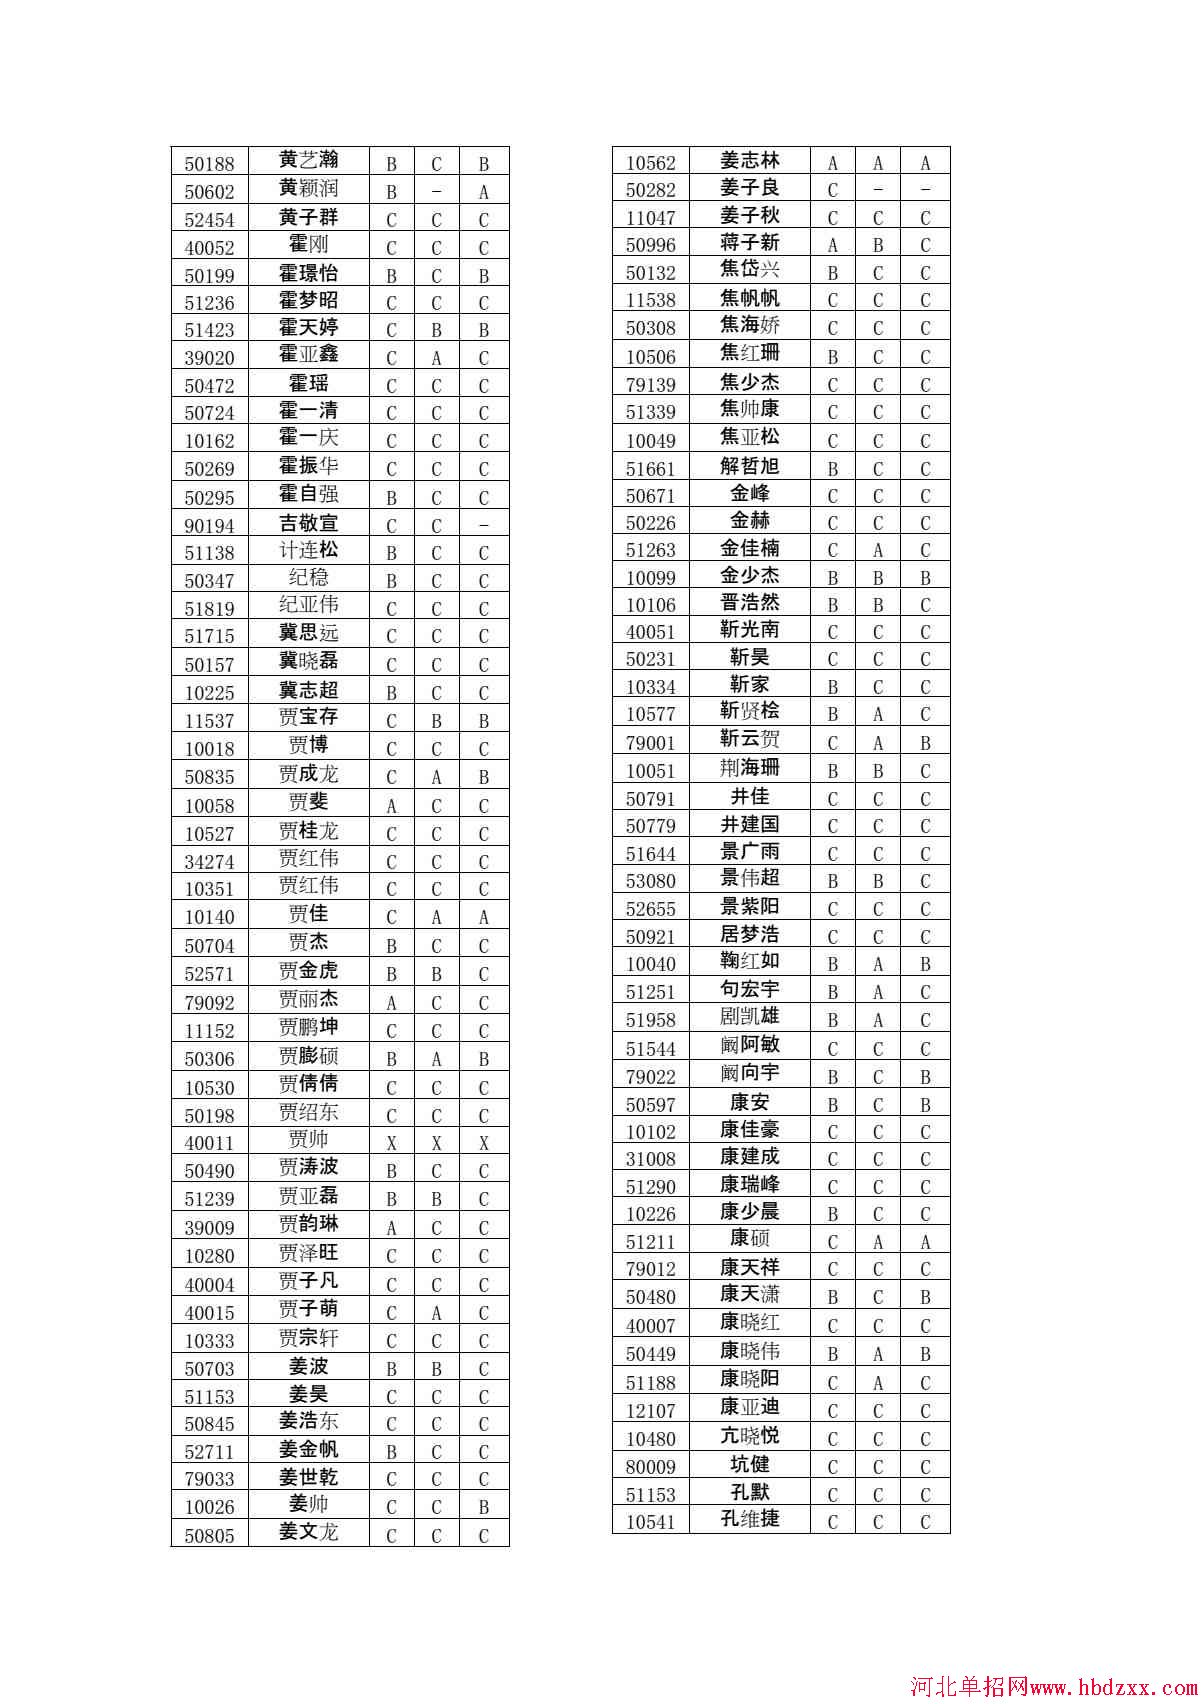 石家庄铁路职业技术学院2015年单独考试招生学问有免考资格考生名单 图3